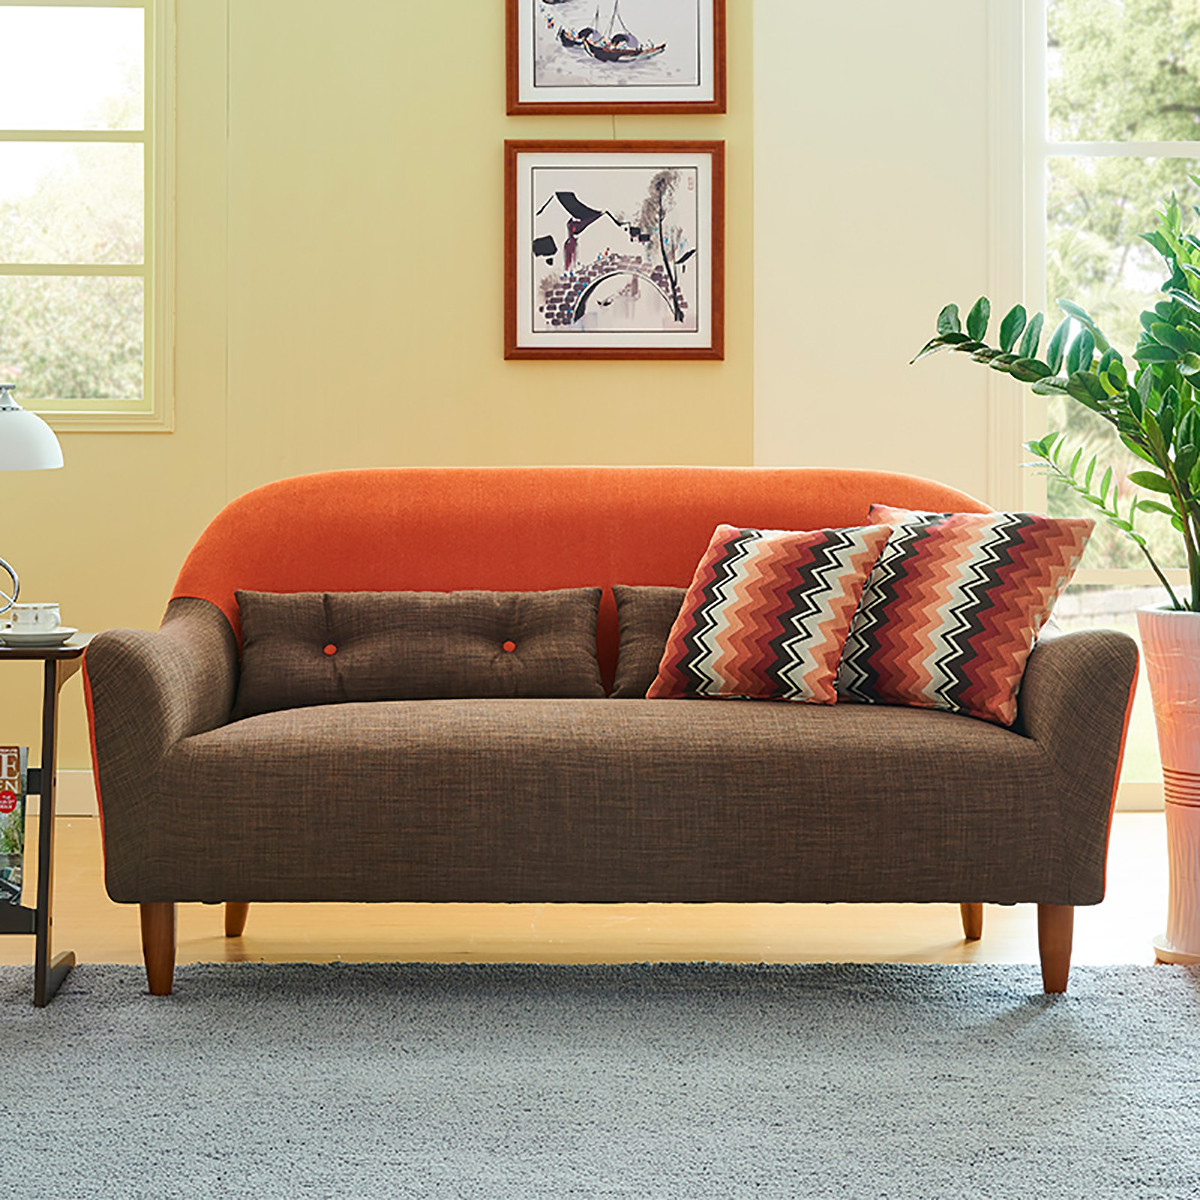 小沙发单人双人三人北欧撞色时尚布艺沙发color橙色 深咖拼色